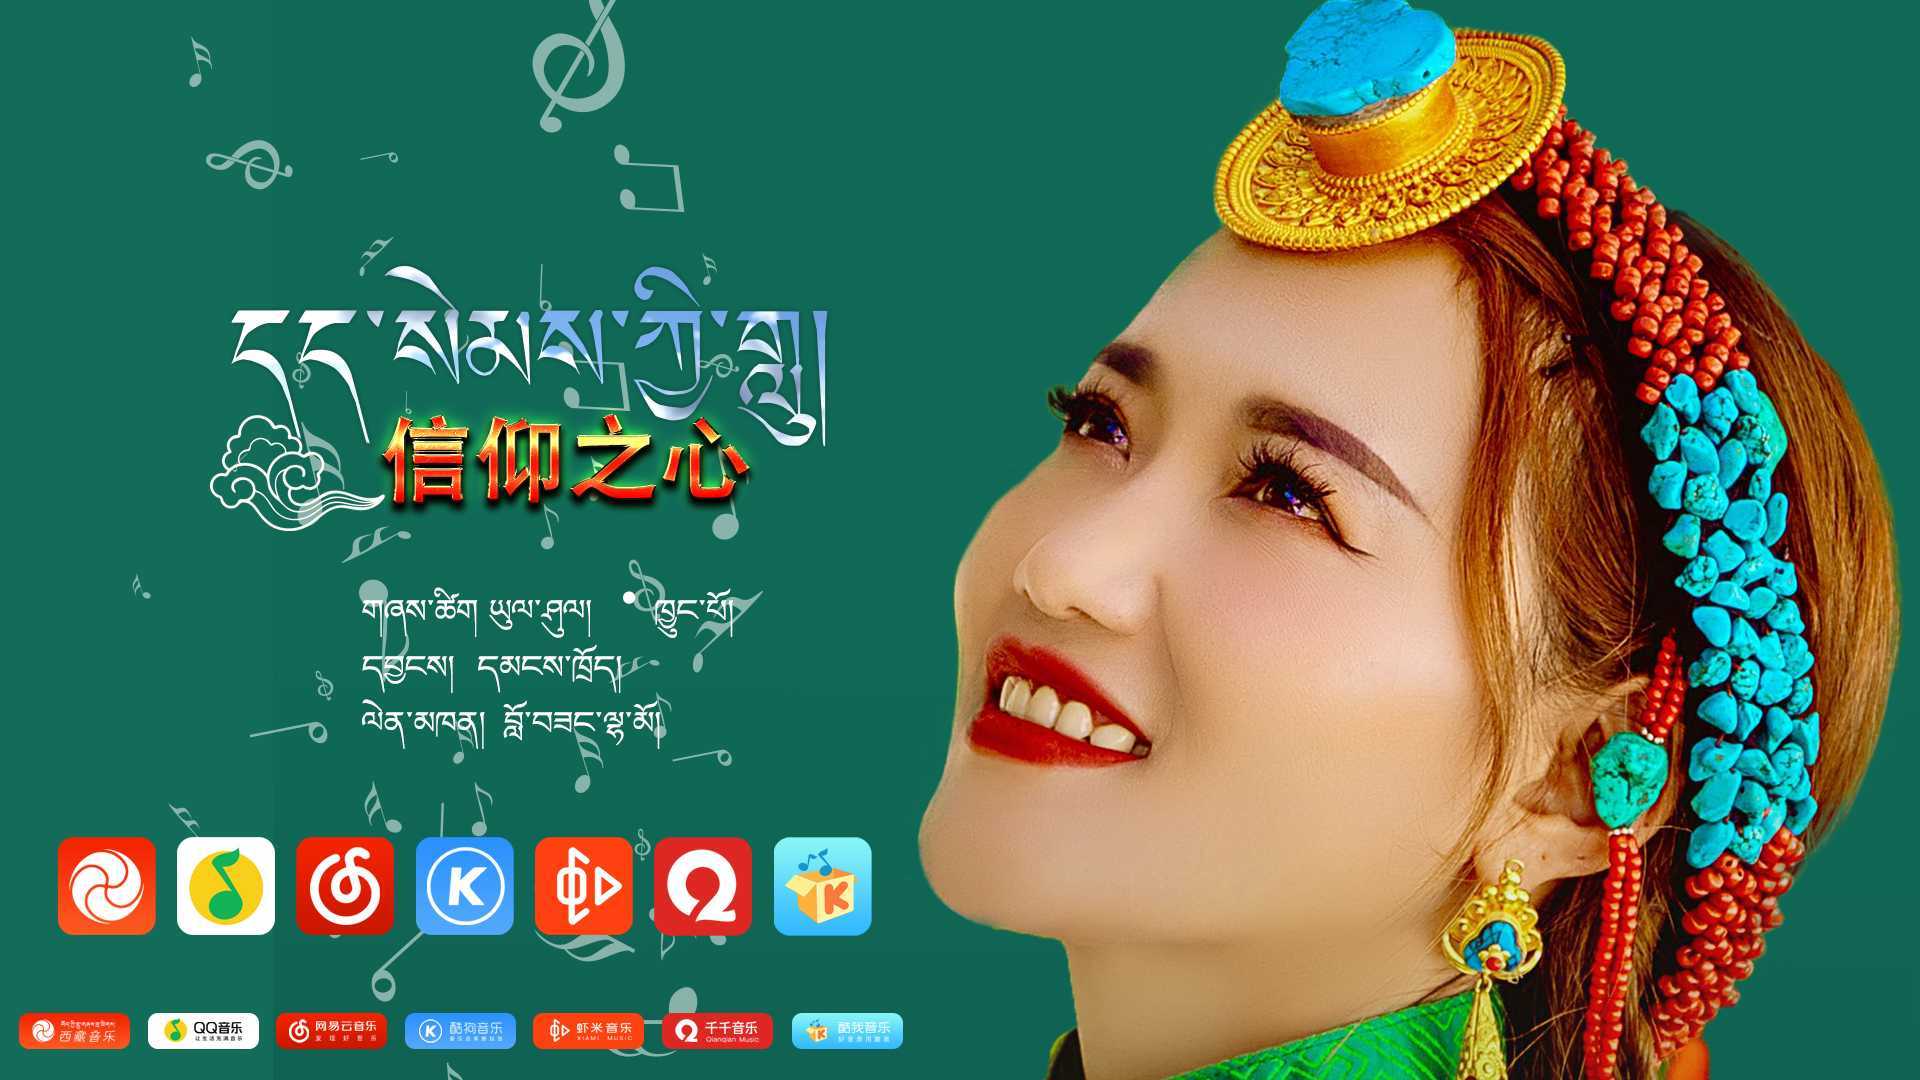 藏族女歌手 罗桑拉姆